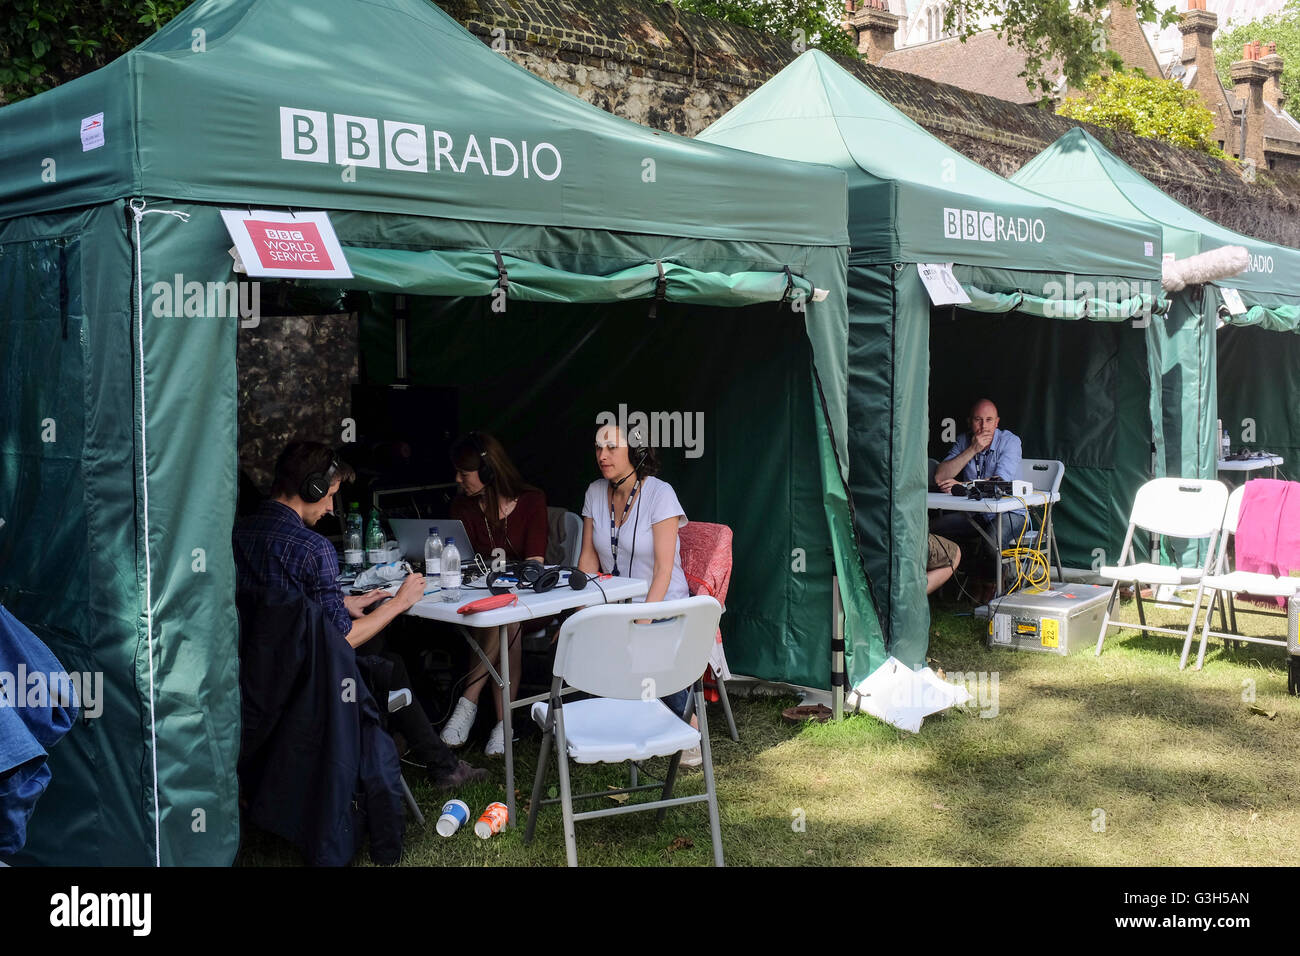 BBC-Radionetzwerke, die von gegenüberliegenden Houses of Parliament, Westminster, London, Großbritannien, senden. Stockfoto